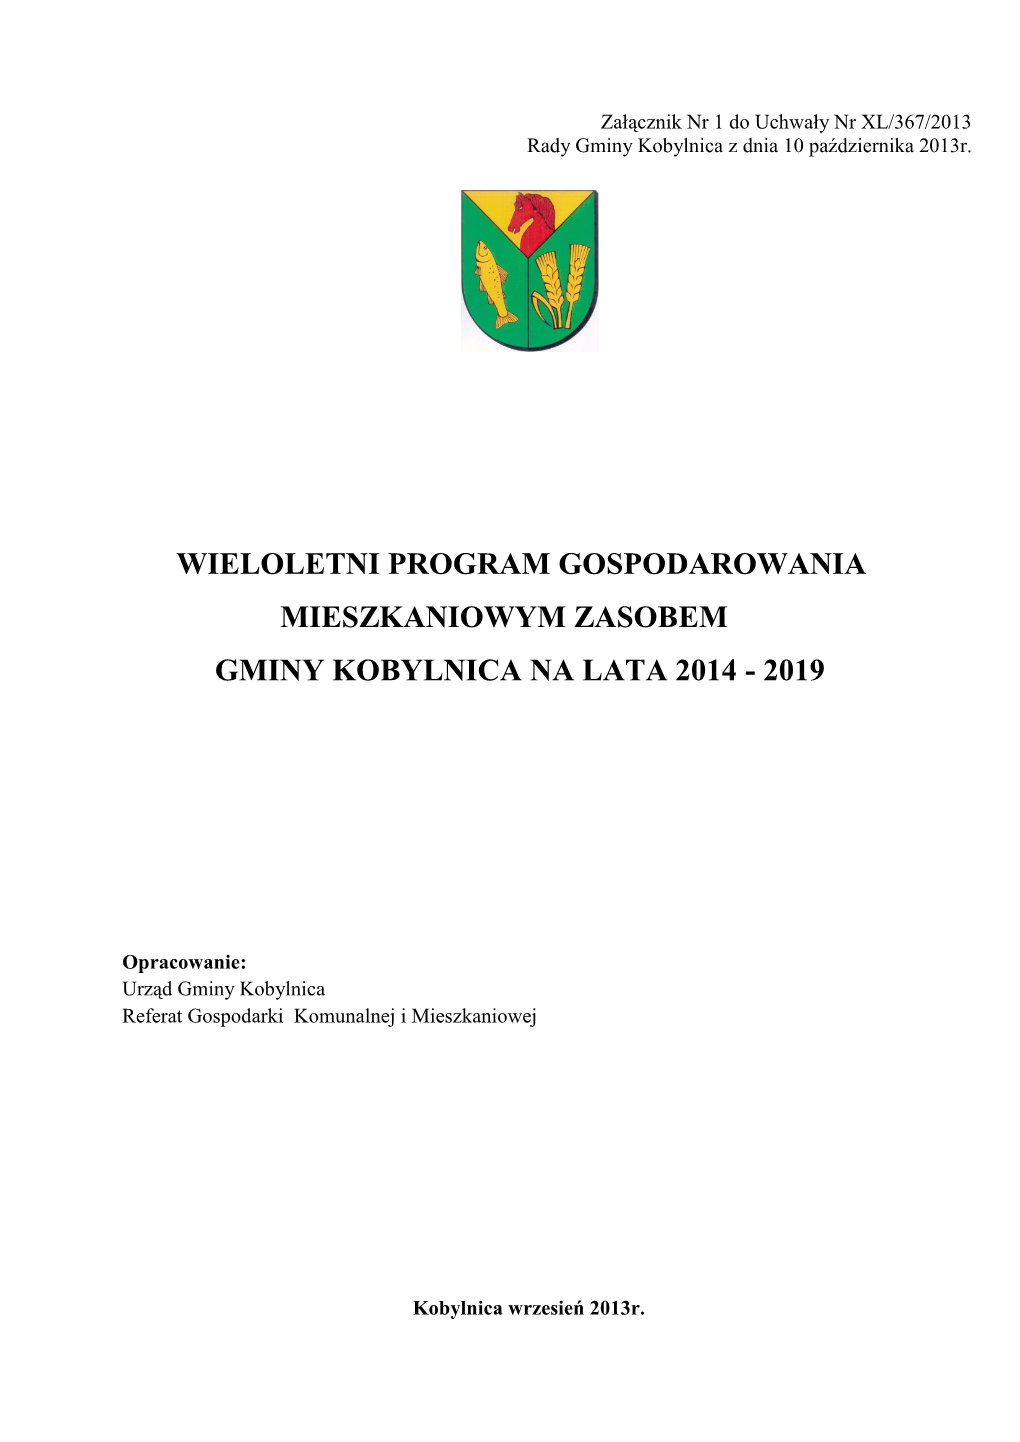 Wieloletni Program Gospodarowania Mieszkaniowym Zasobem Gminy Kobylnica Na Lata 2014 - 2019